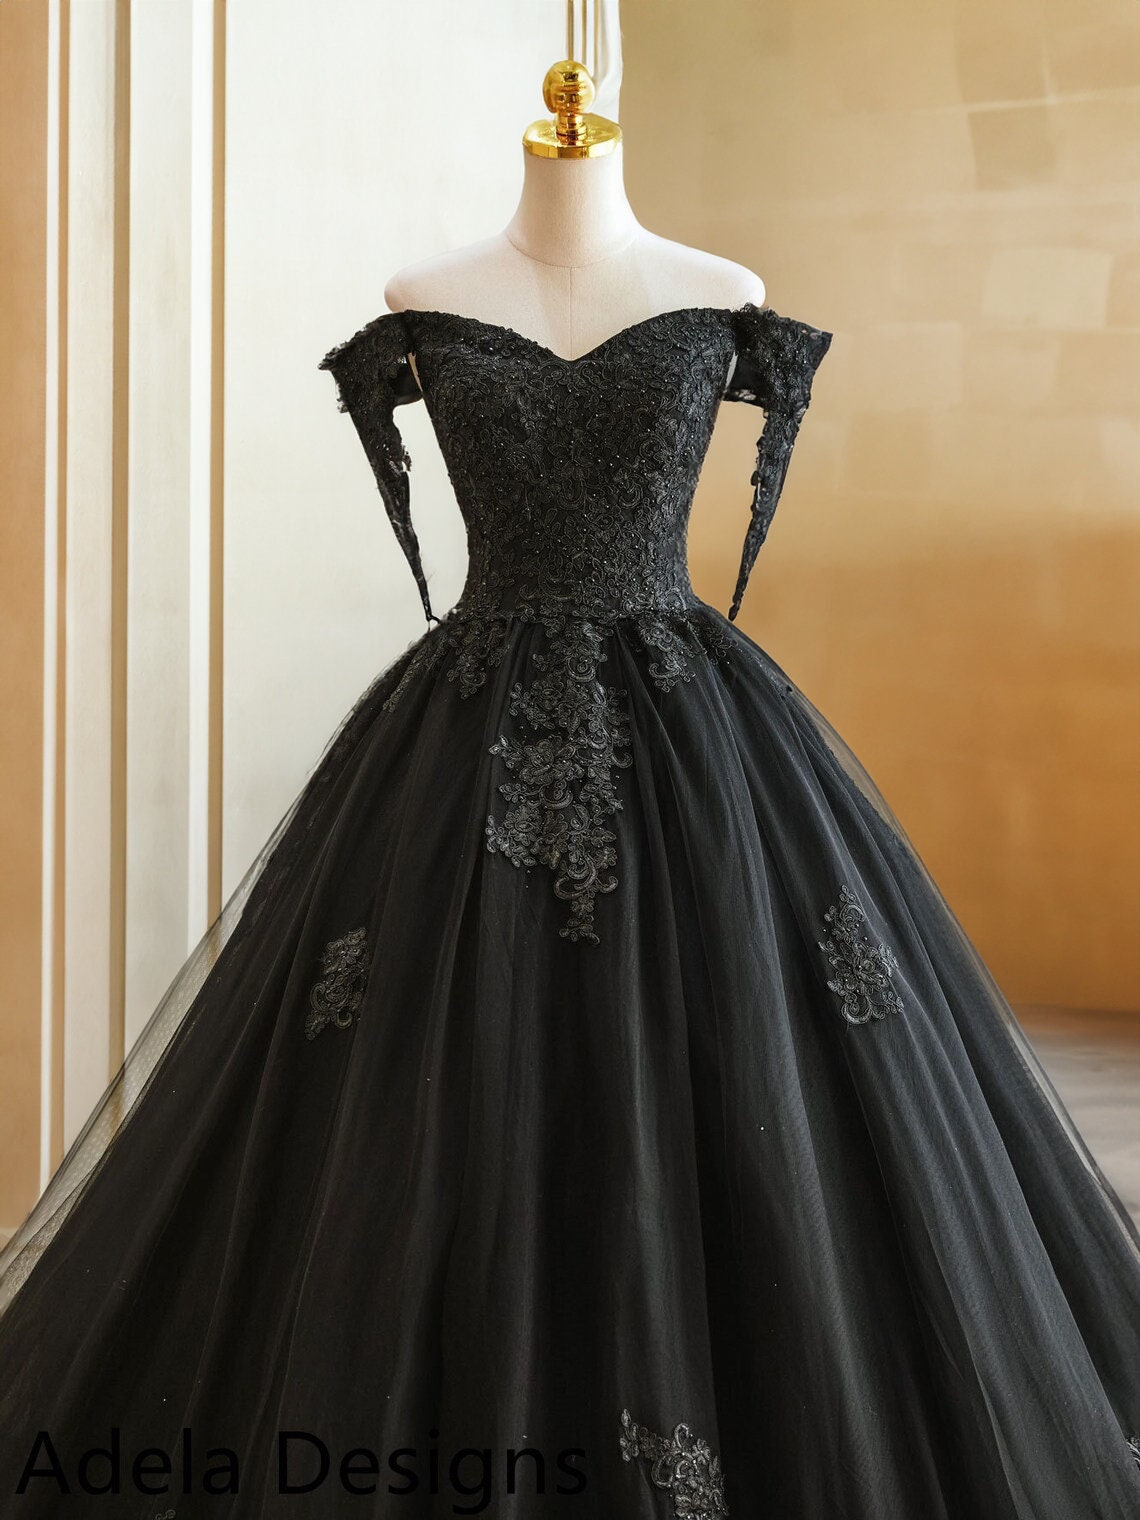 Black Lace Ball Gown Wedding Dress, Unique Wedding Dress, Halloween Wedding  Dress Martha EN180601 -  Canada